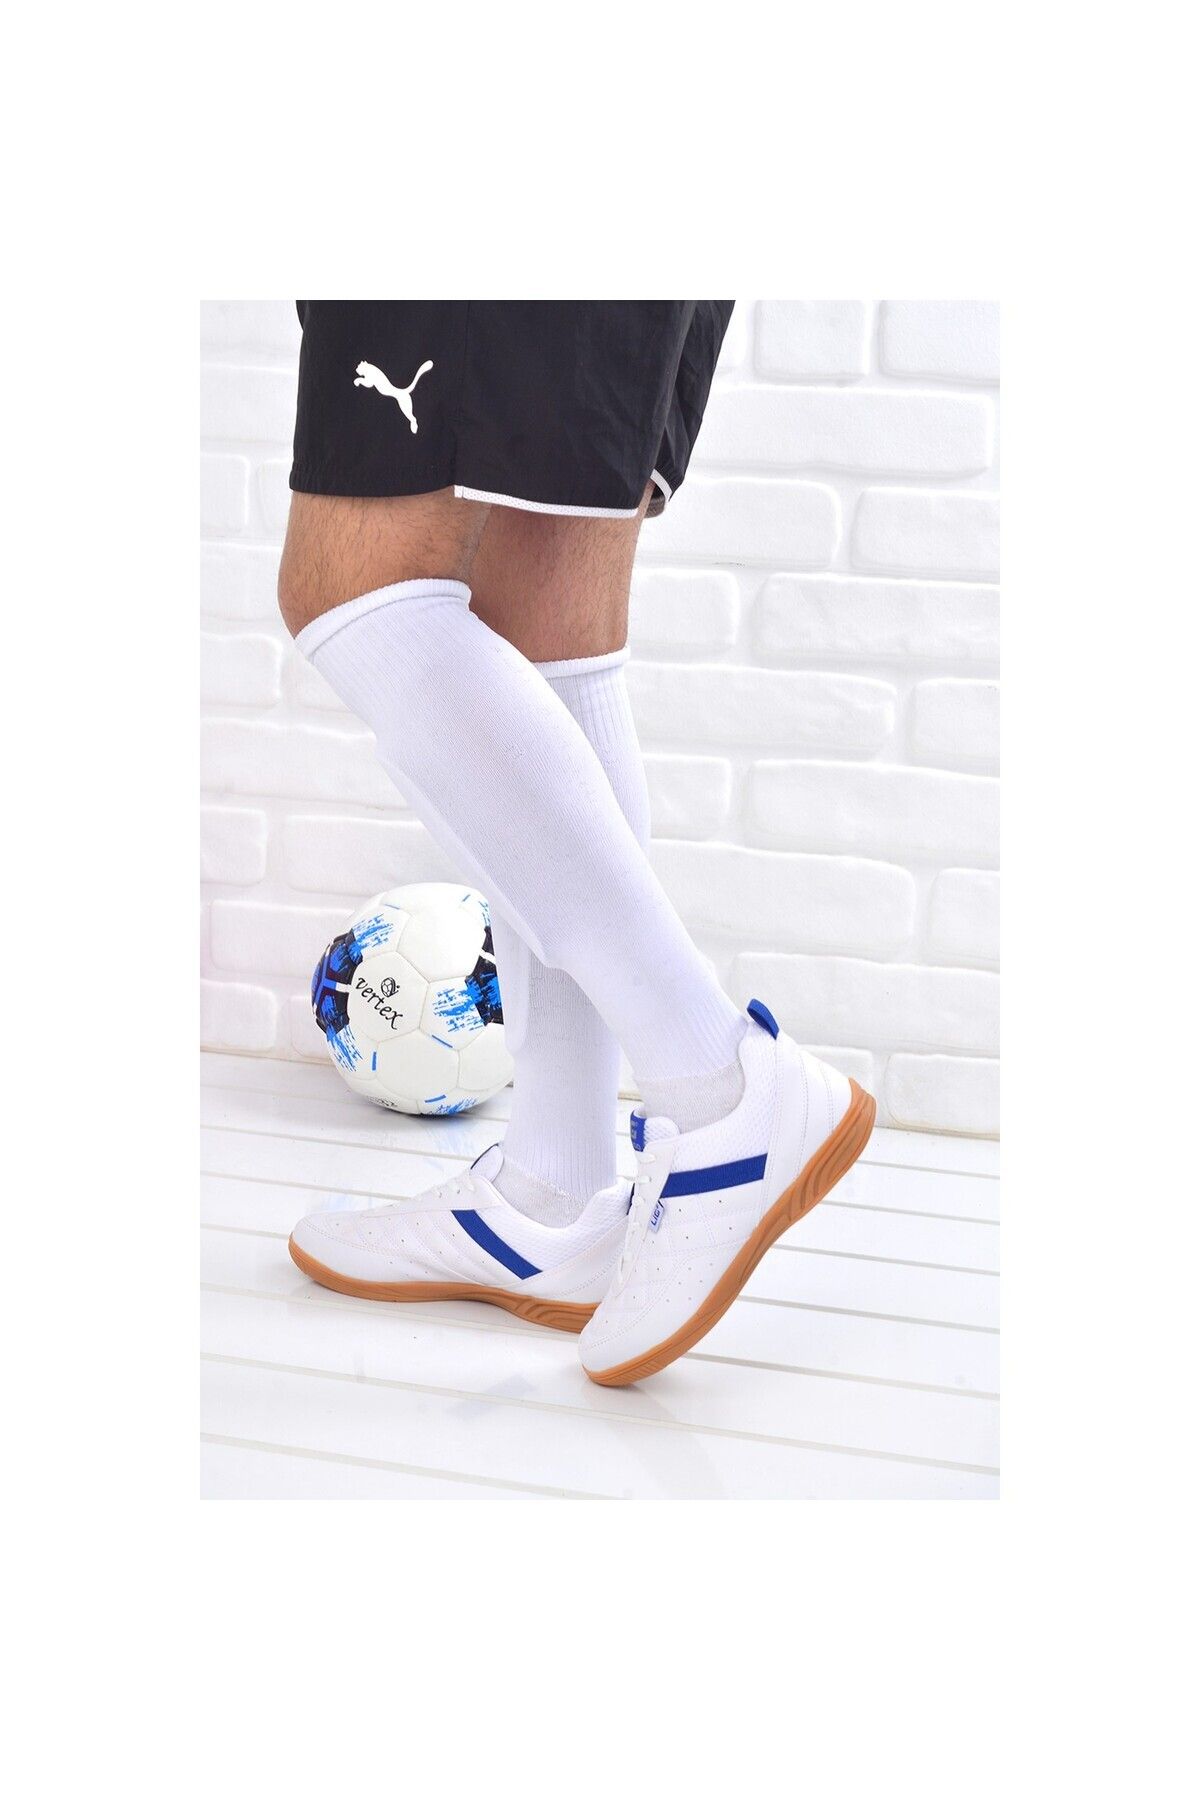 Moda Mevsimi Futsal Hentbol Voleybol Salon Taban Kaymaz Kauçuk Taban Spor Ayakkabı